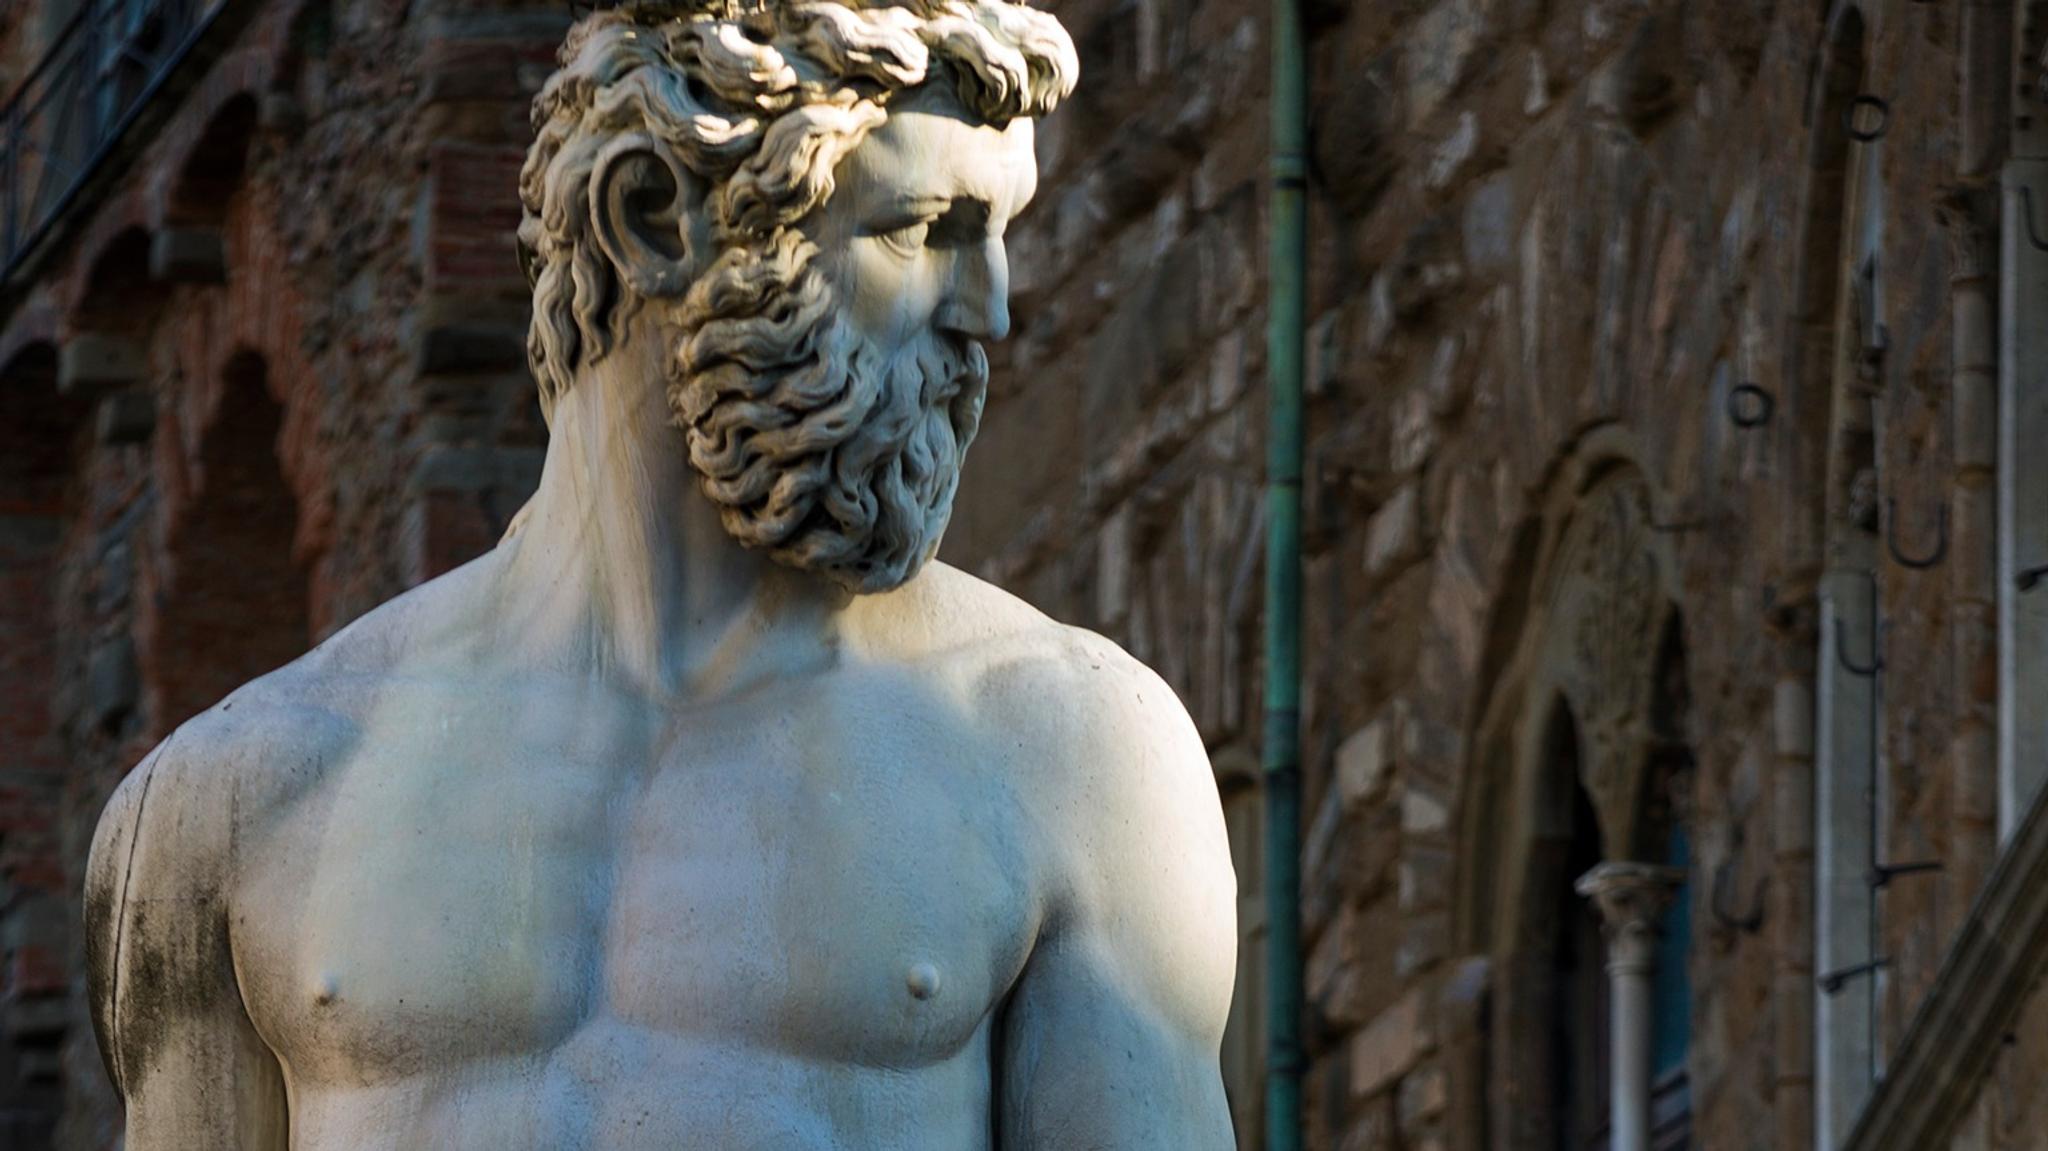 The Fountain of Neptune in Piazza della Signoria